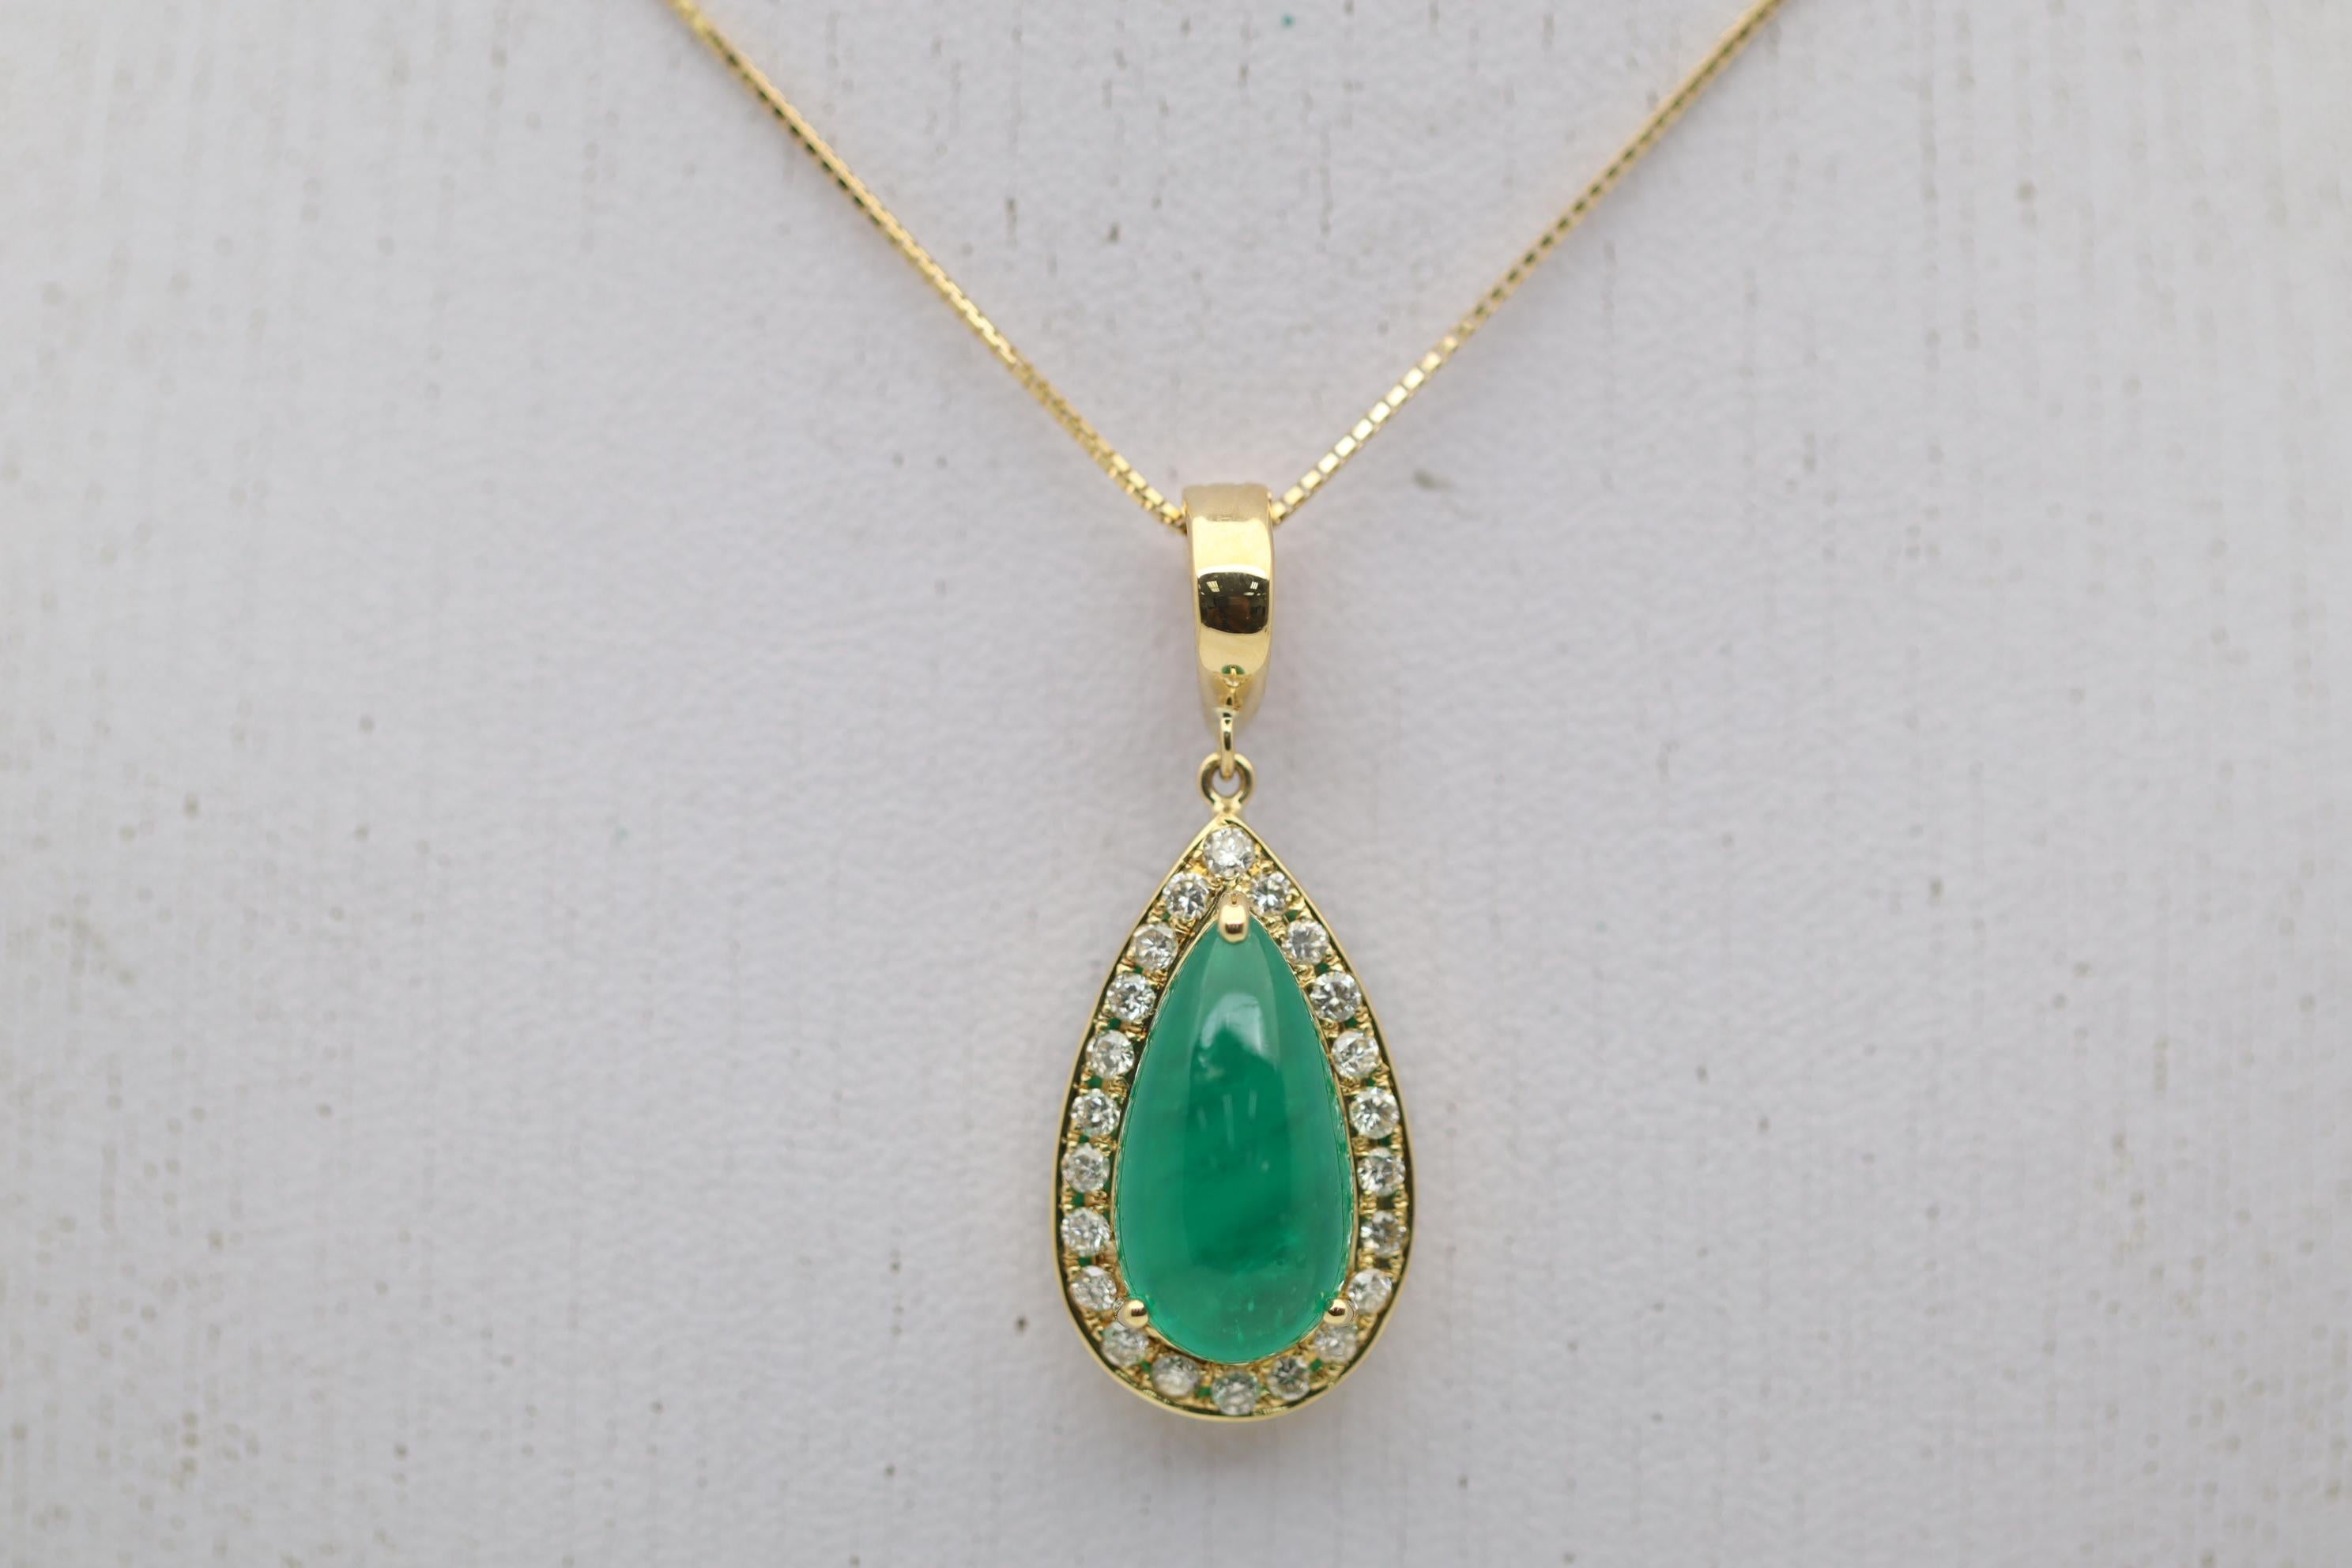 Ravissant pendentif en or orné d'une émeraude de 5,04 carats. L'émeraude a une riche couleur vert foncé et est façonnée en cabochon en forme de goutte. Elle est complétée par 0,44 carats de diamants ronds de taille brillant sertis autour de